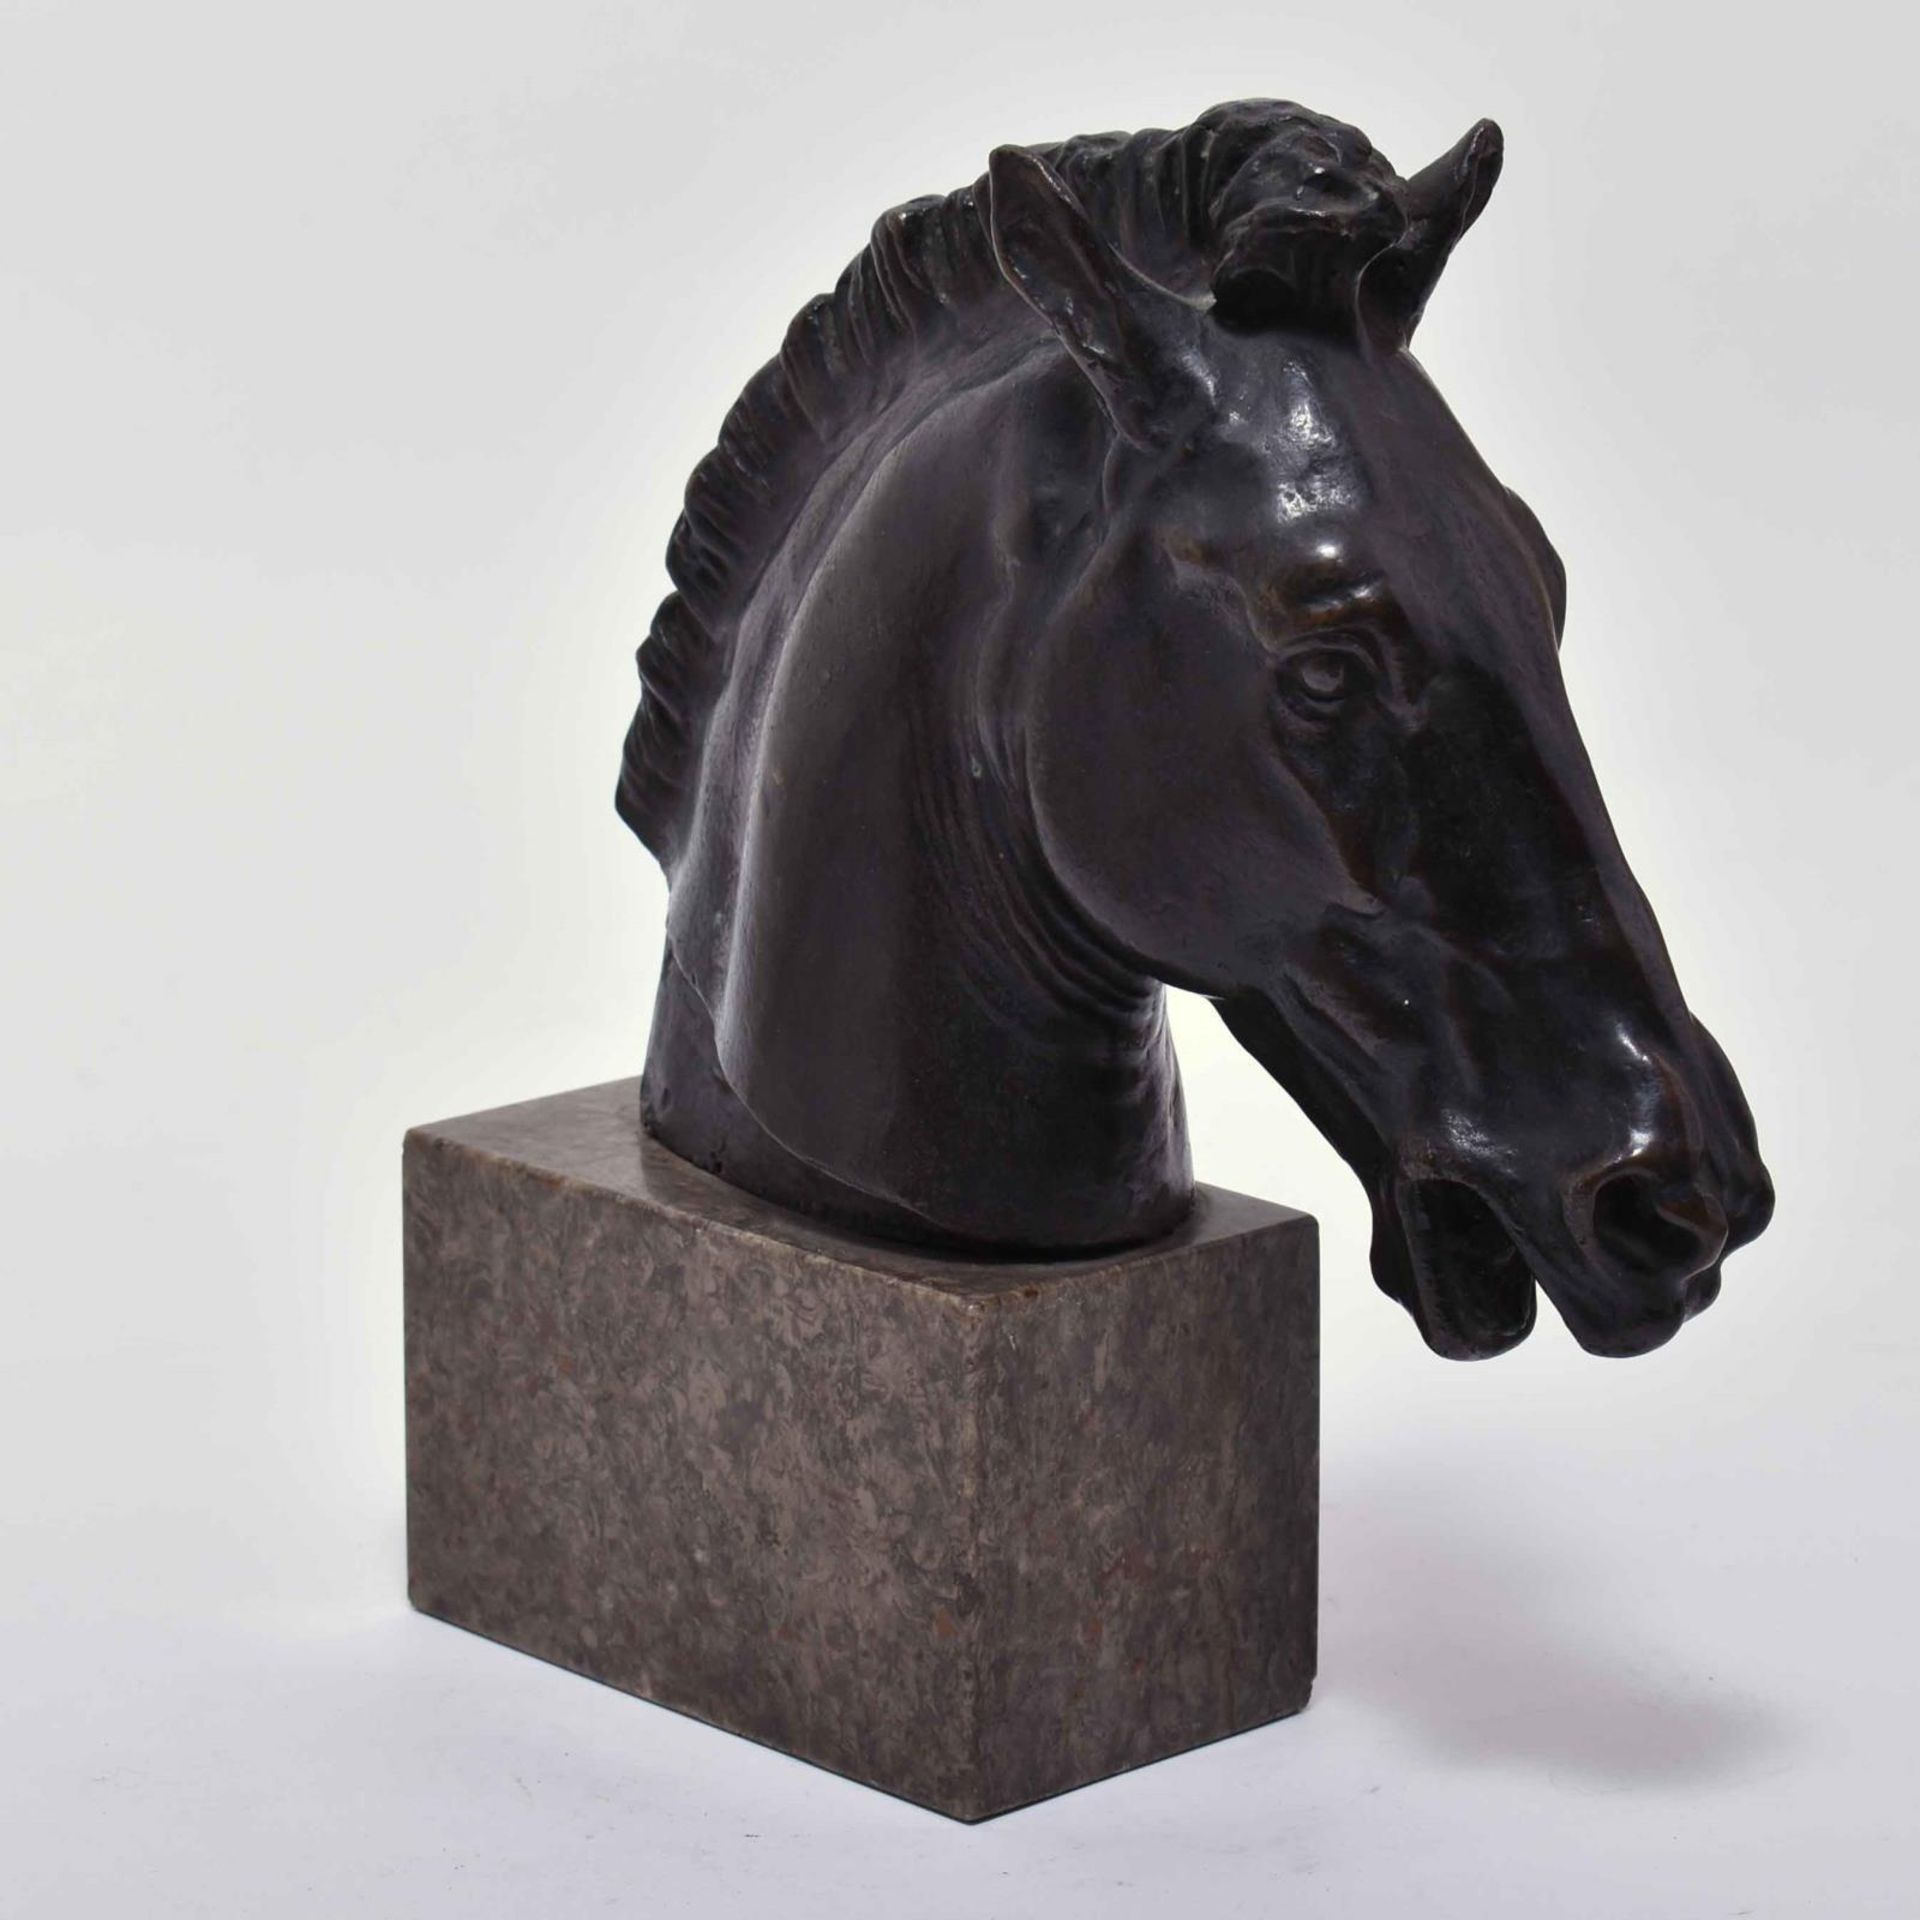 Pferdekopf. Bronze, patiniert. Marmorsockel. - Image 2 of 2